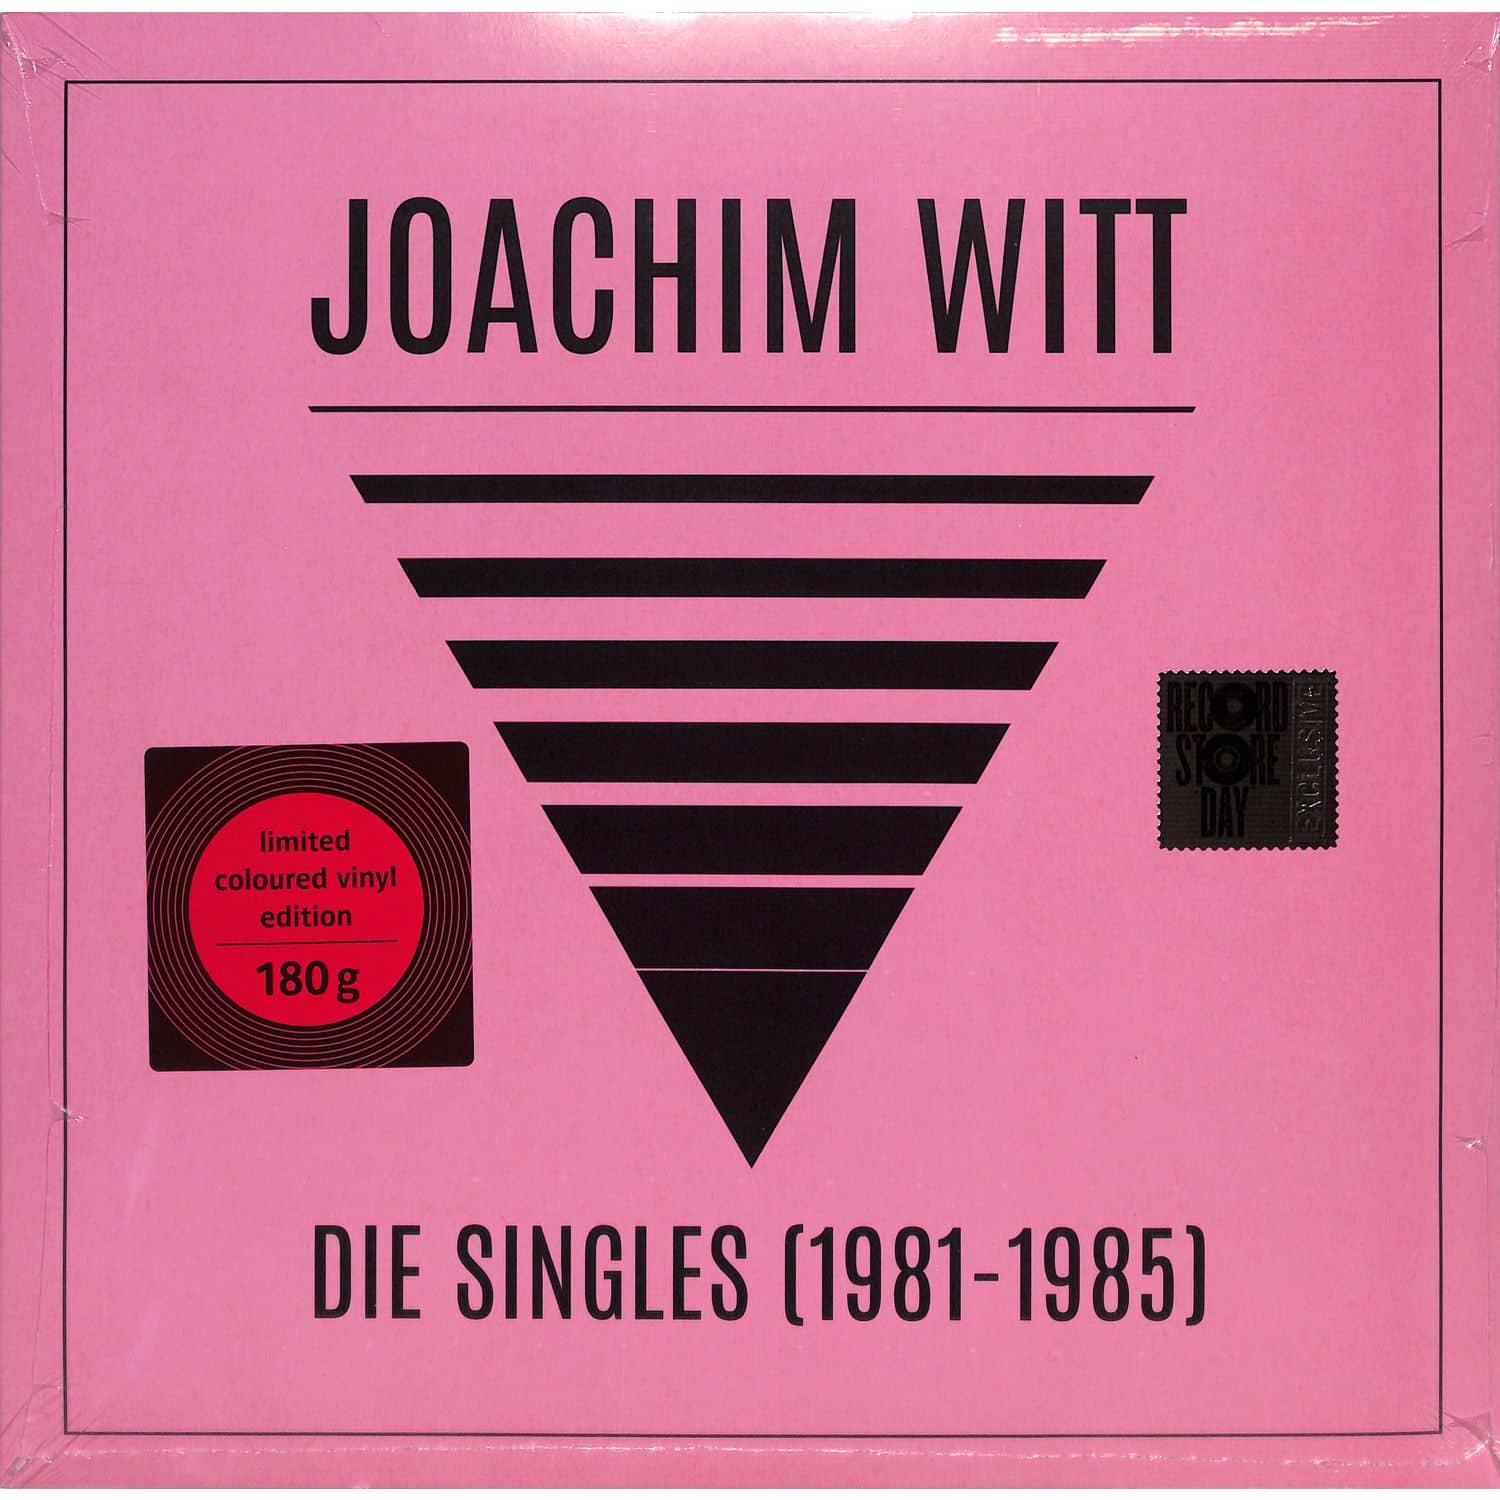 Joachim Witt - DIE SINGLES 1981-1985 